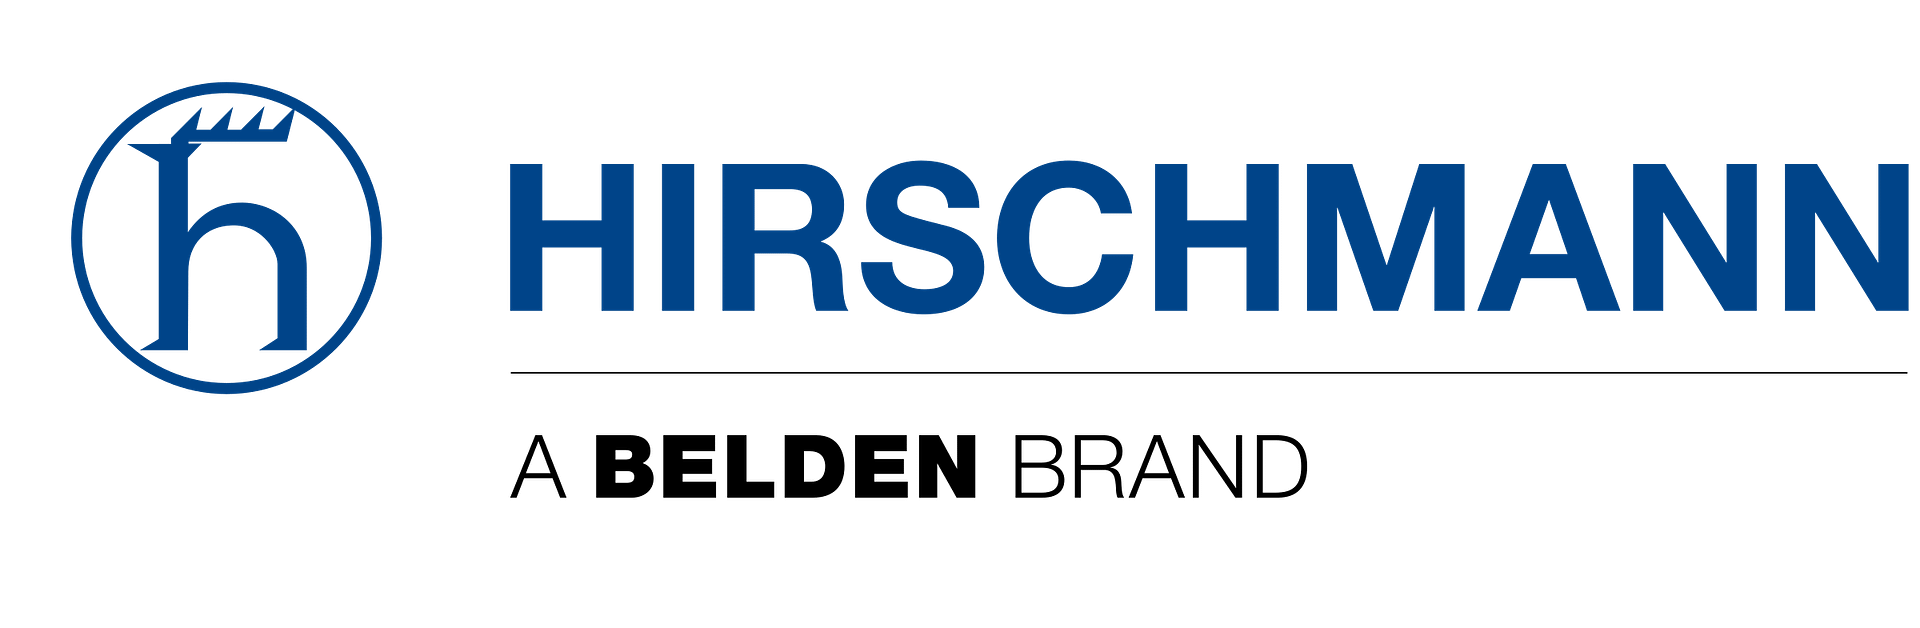 hirschmann-2-logo-png-transparent